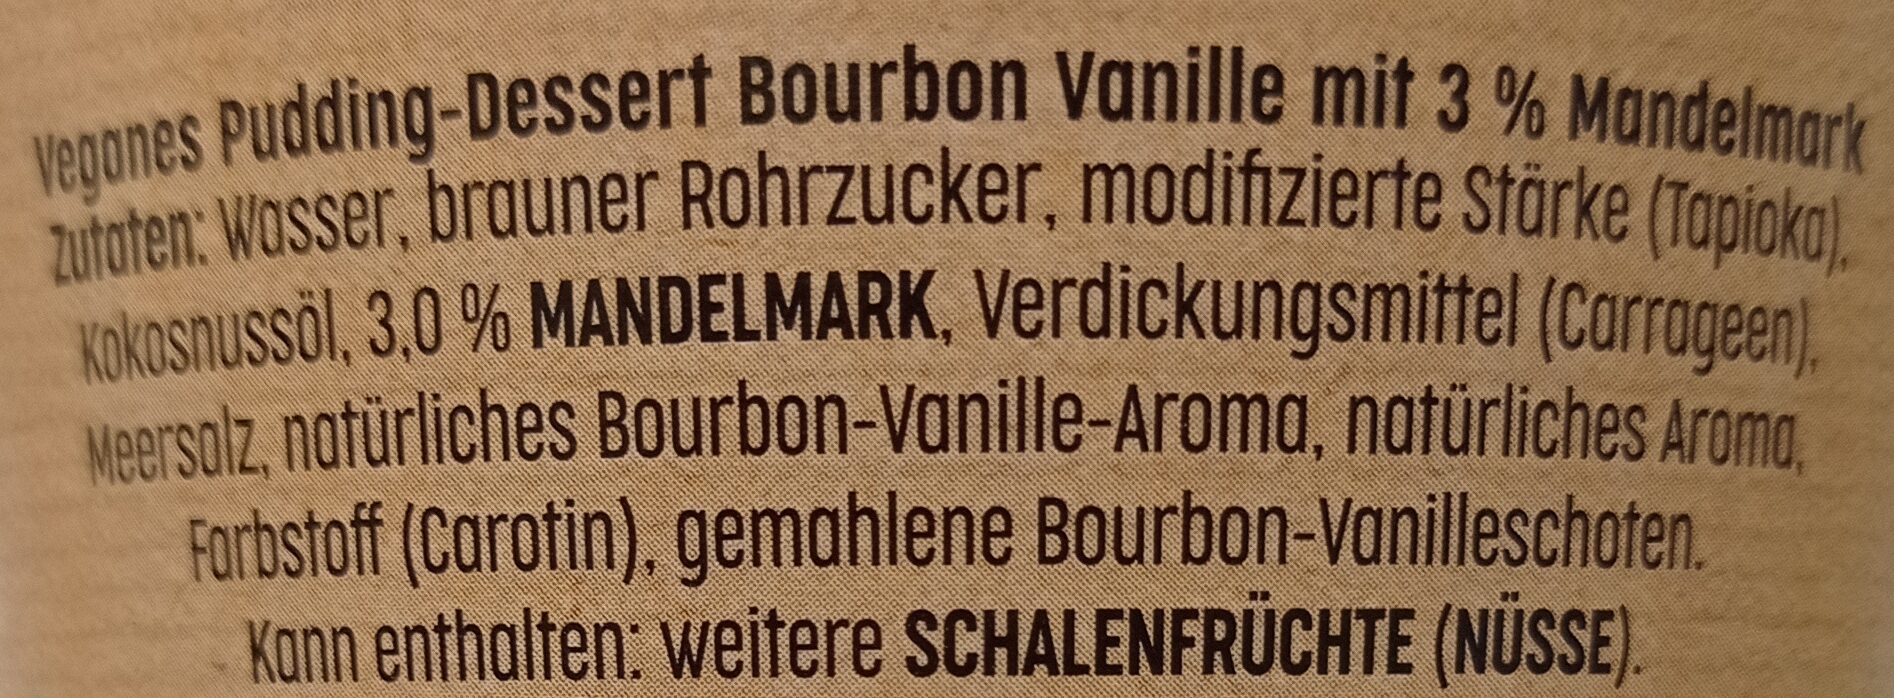 loVE it! Pflanzlicher Pudding - Burbon-Vanille - Zutaten